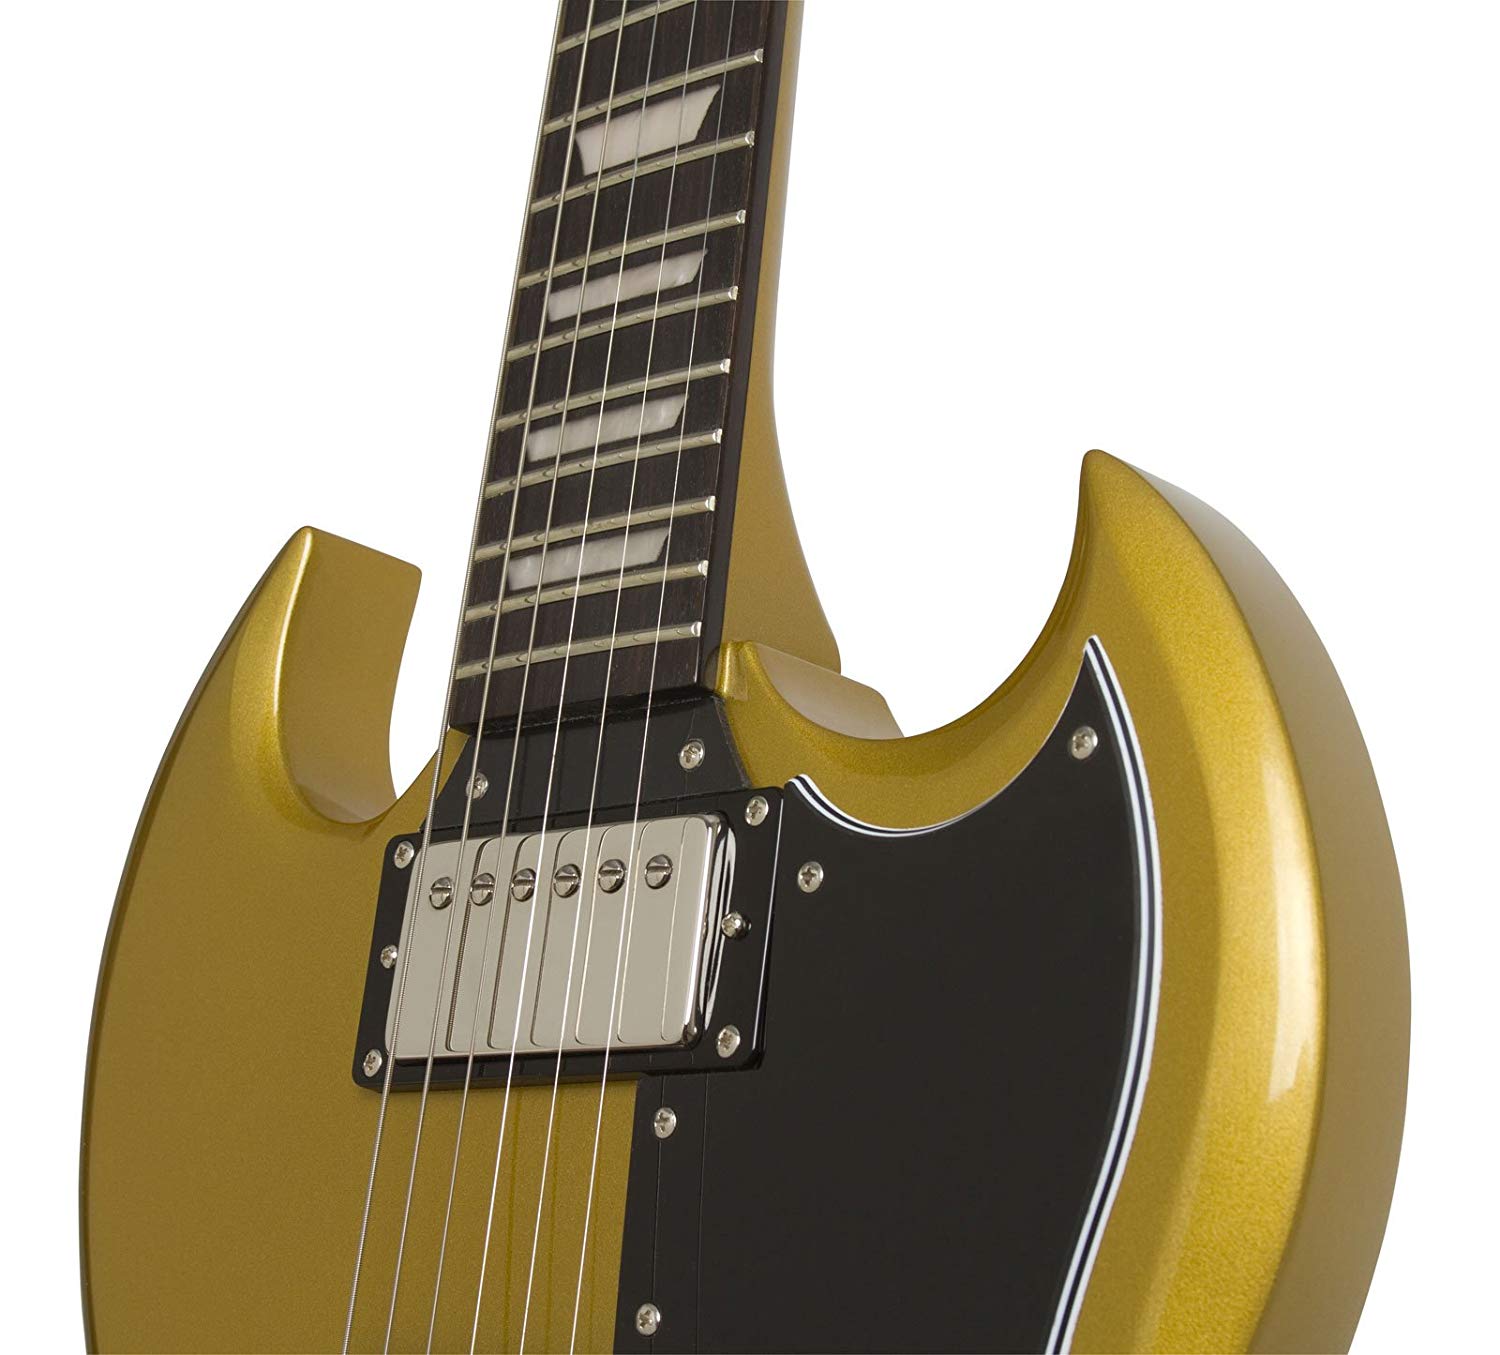 Epiphone G-400 Pro 1961 Ltd 2018 Hh Ht Pf - Metallic Gold - Guitarra eléctrica de doble corte - Variation 2